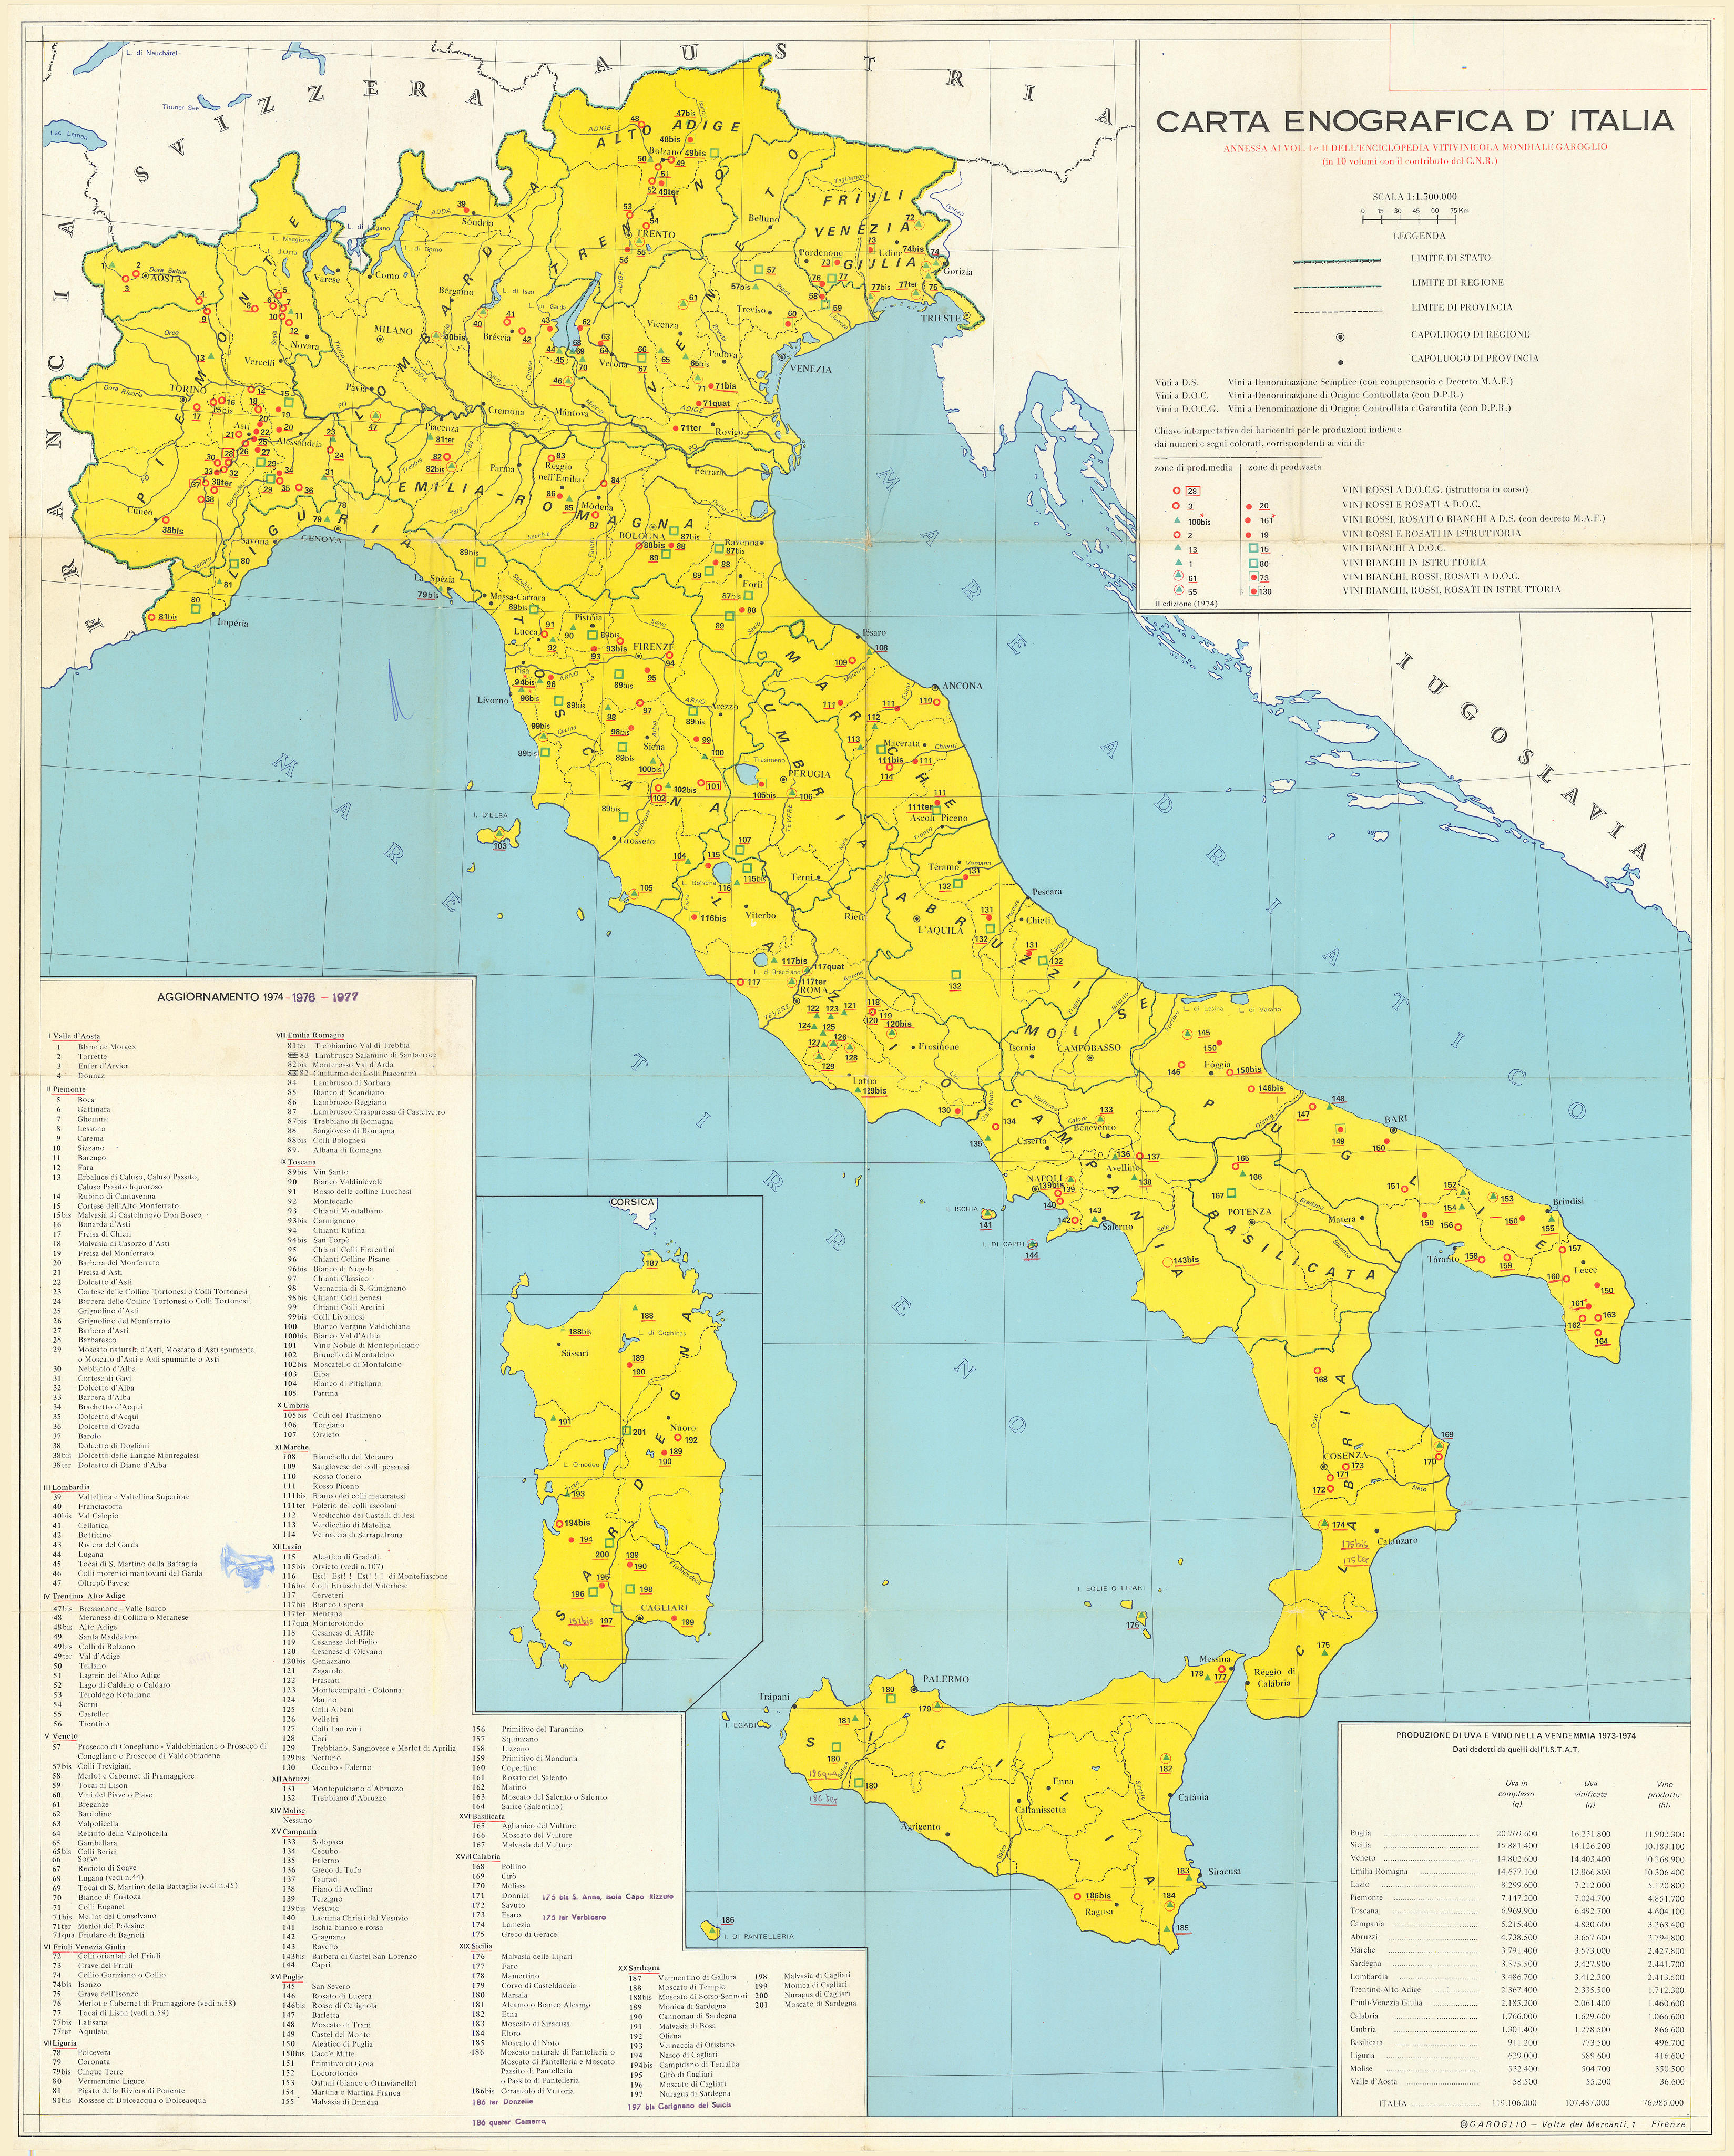 Carta Enografica d'Italia. Italy wine. Viticulture map. 86x69cm 1977 old